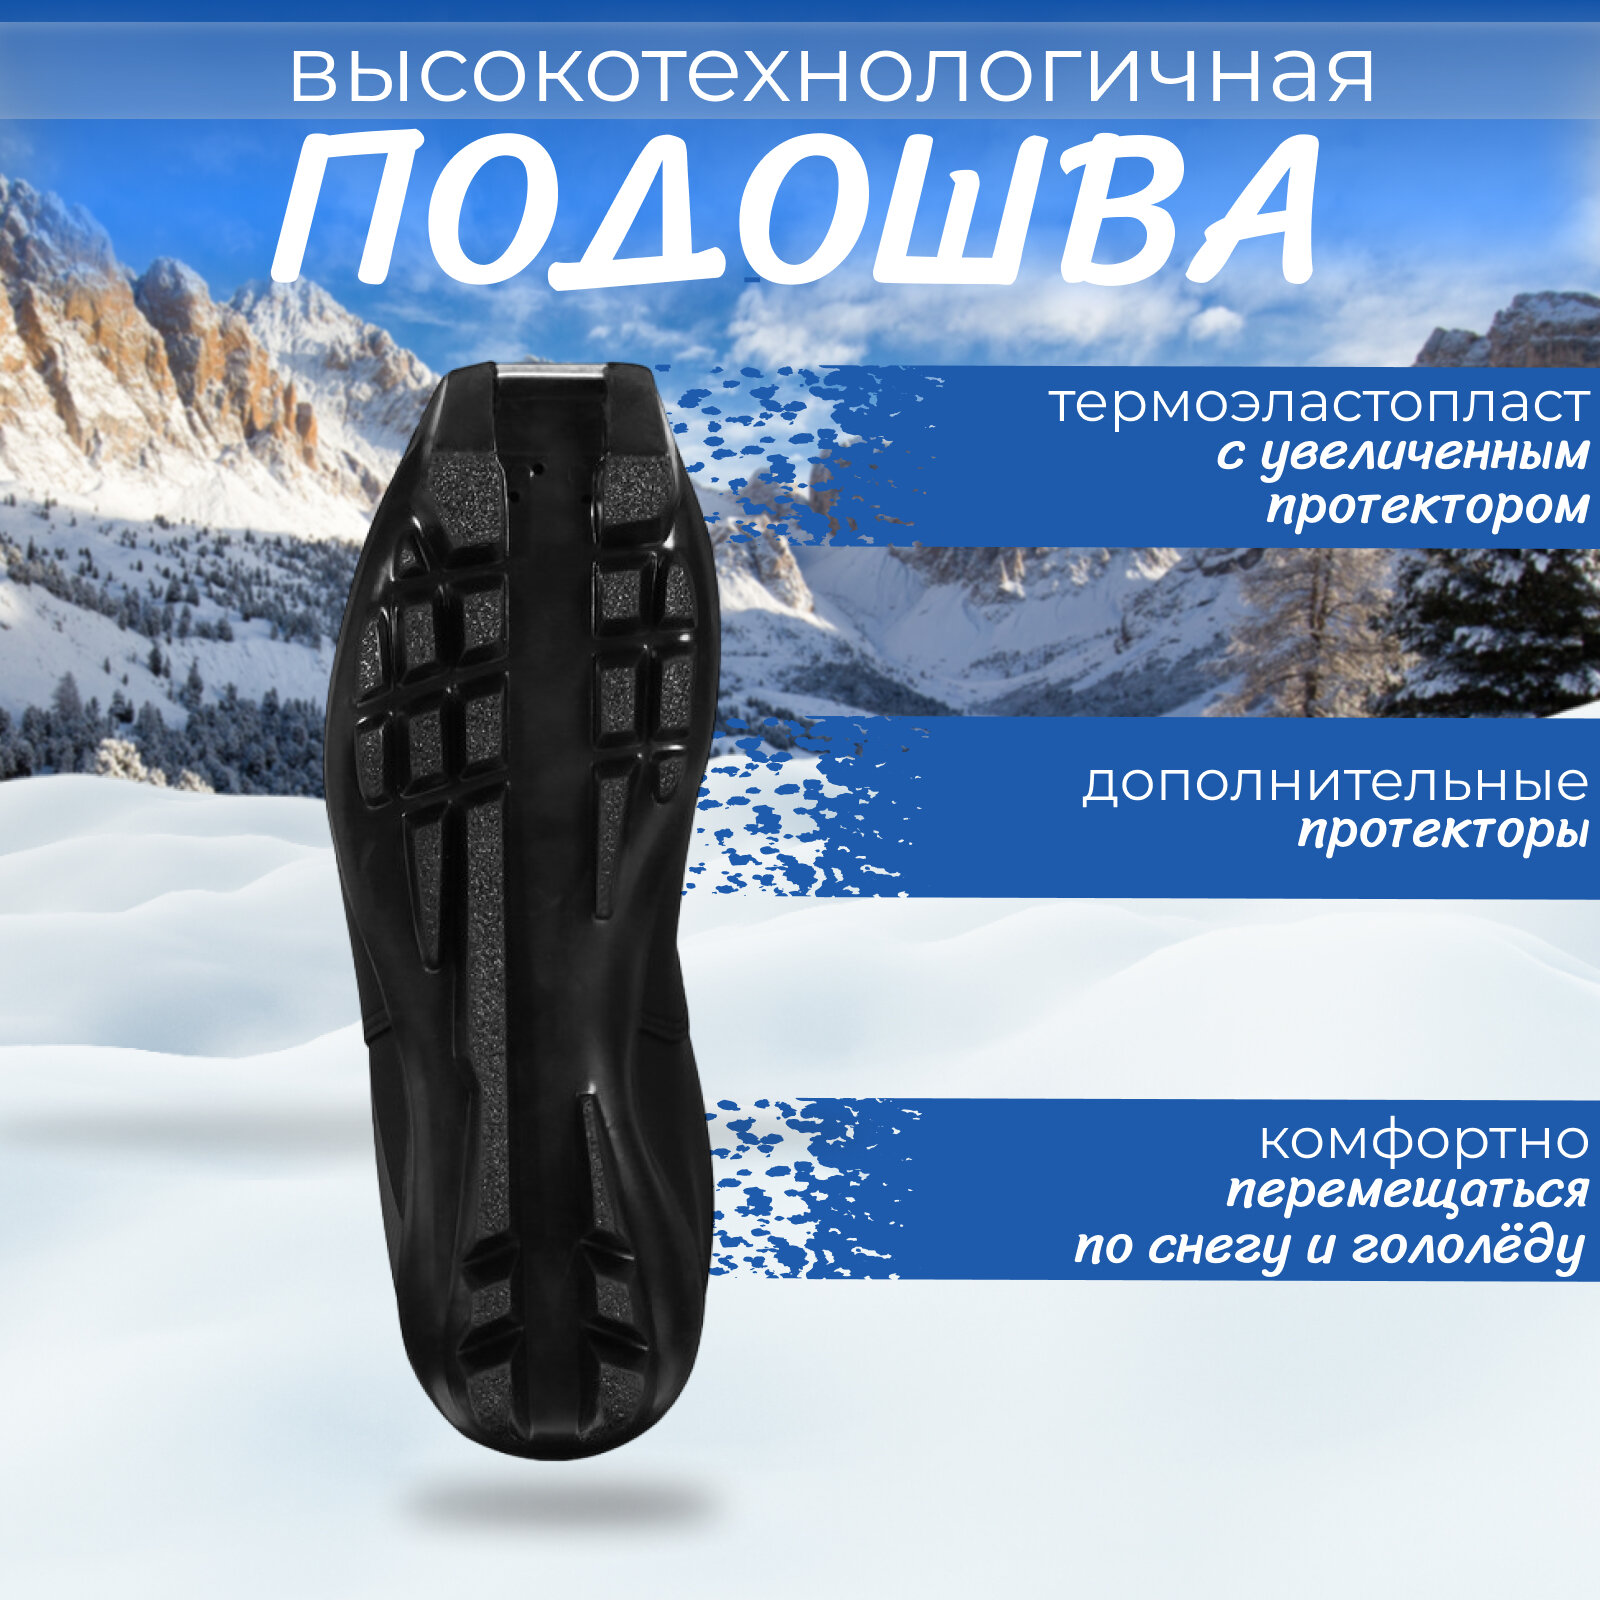 Ботинки лыжные Winter Star classic, SNS, размер 41, цвет чёрный, серый